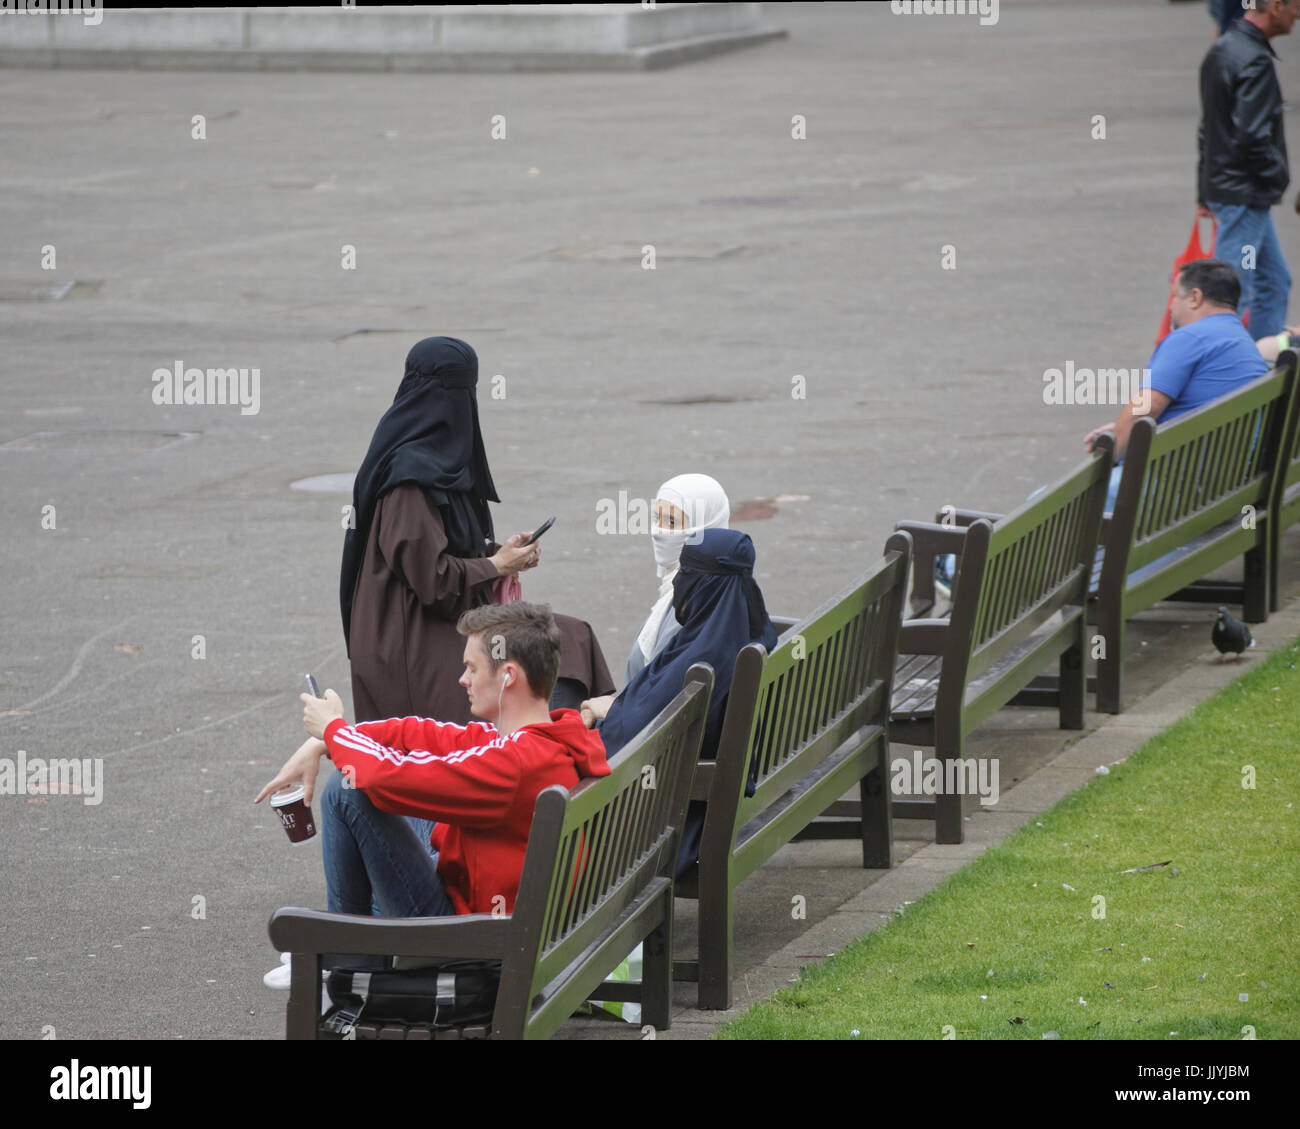 Asiatische Flüchtling gekleidet Hijab Schal auf George Square Glasgow Straße in der UK alltägliche Szene Stockfoto